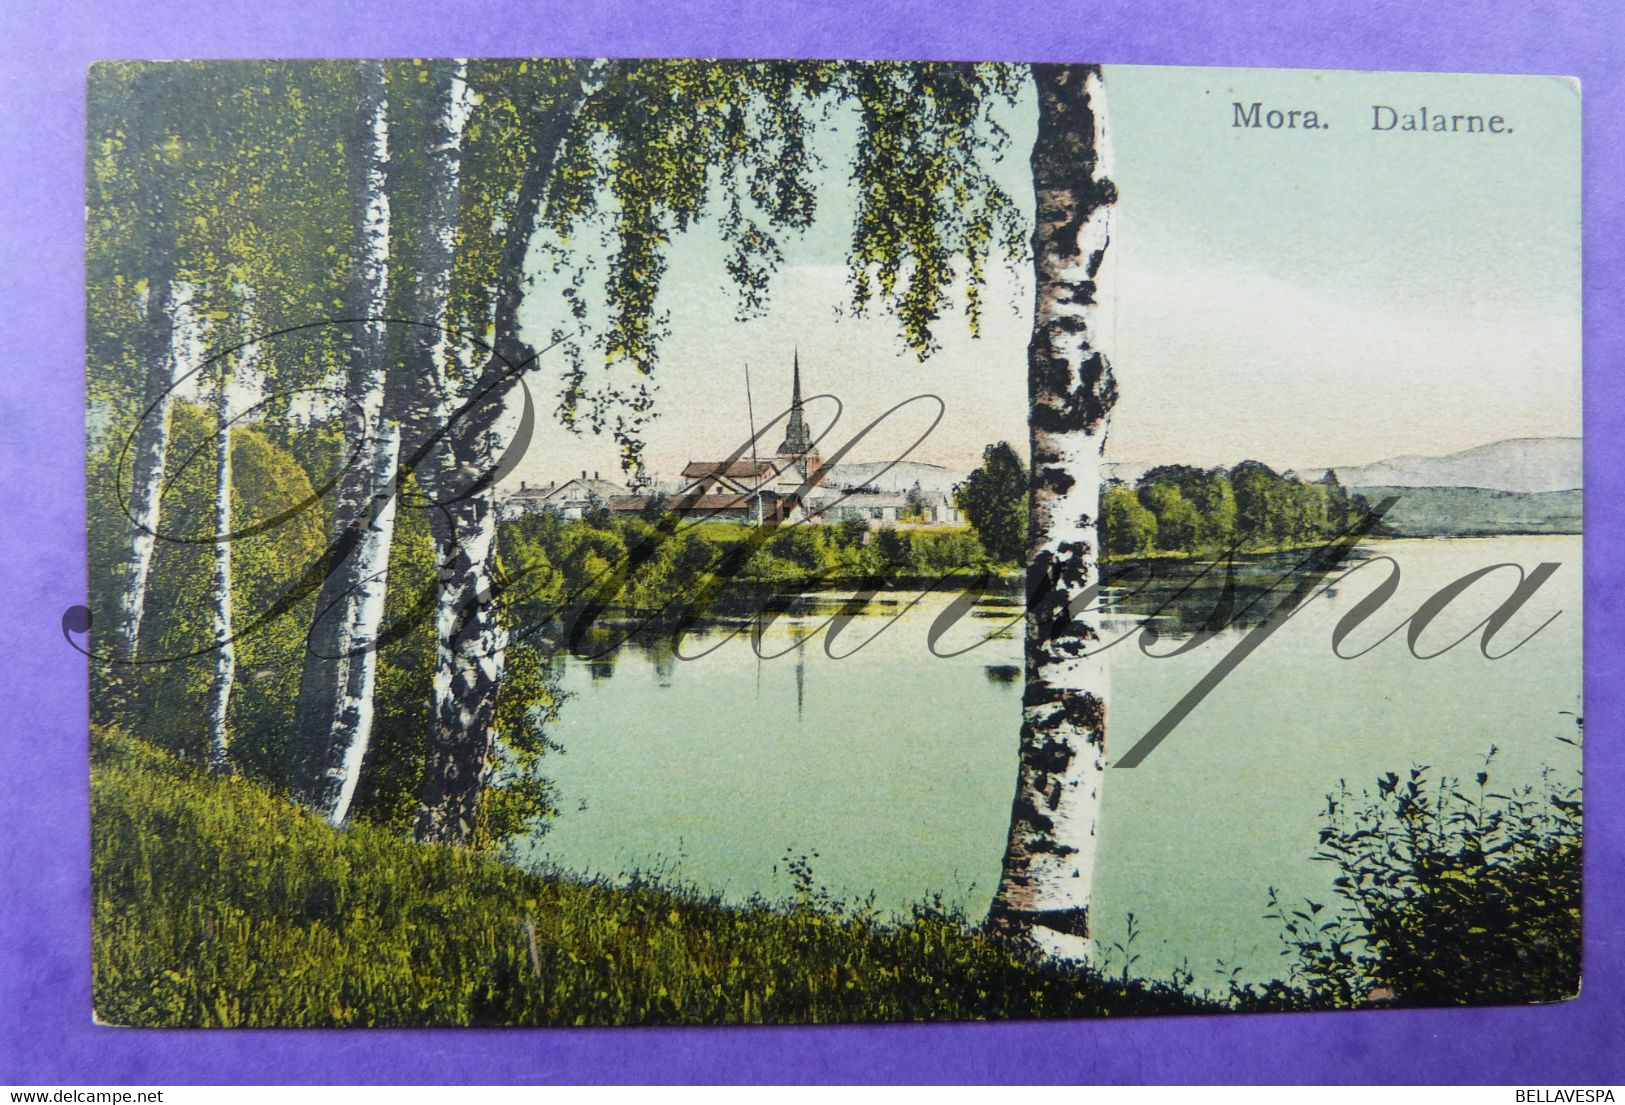 Mora Sverige Dalarne. Colore Ed. Cr 267 C.N. Stockholm - Sweden